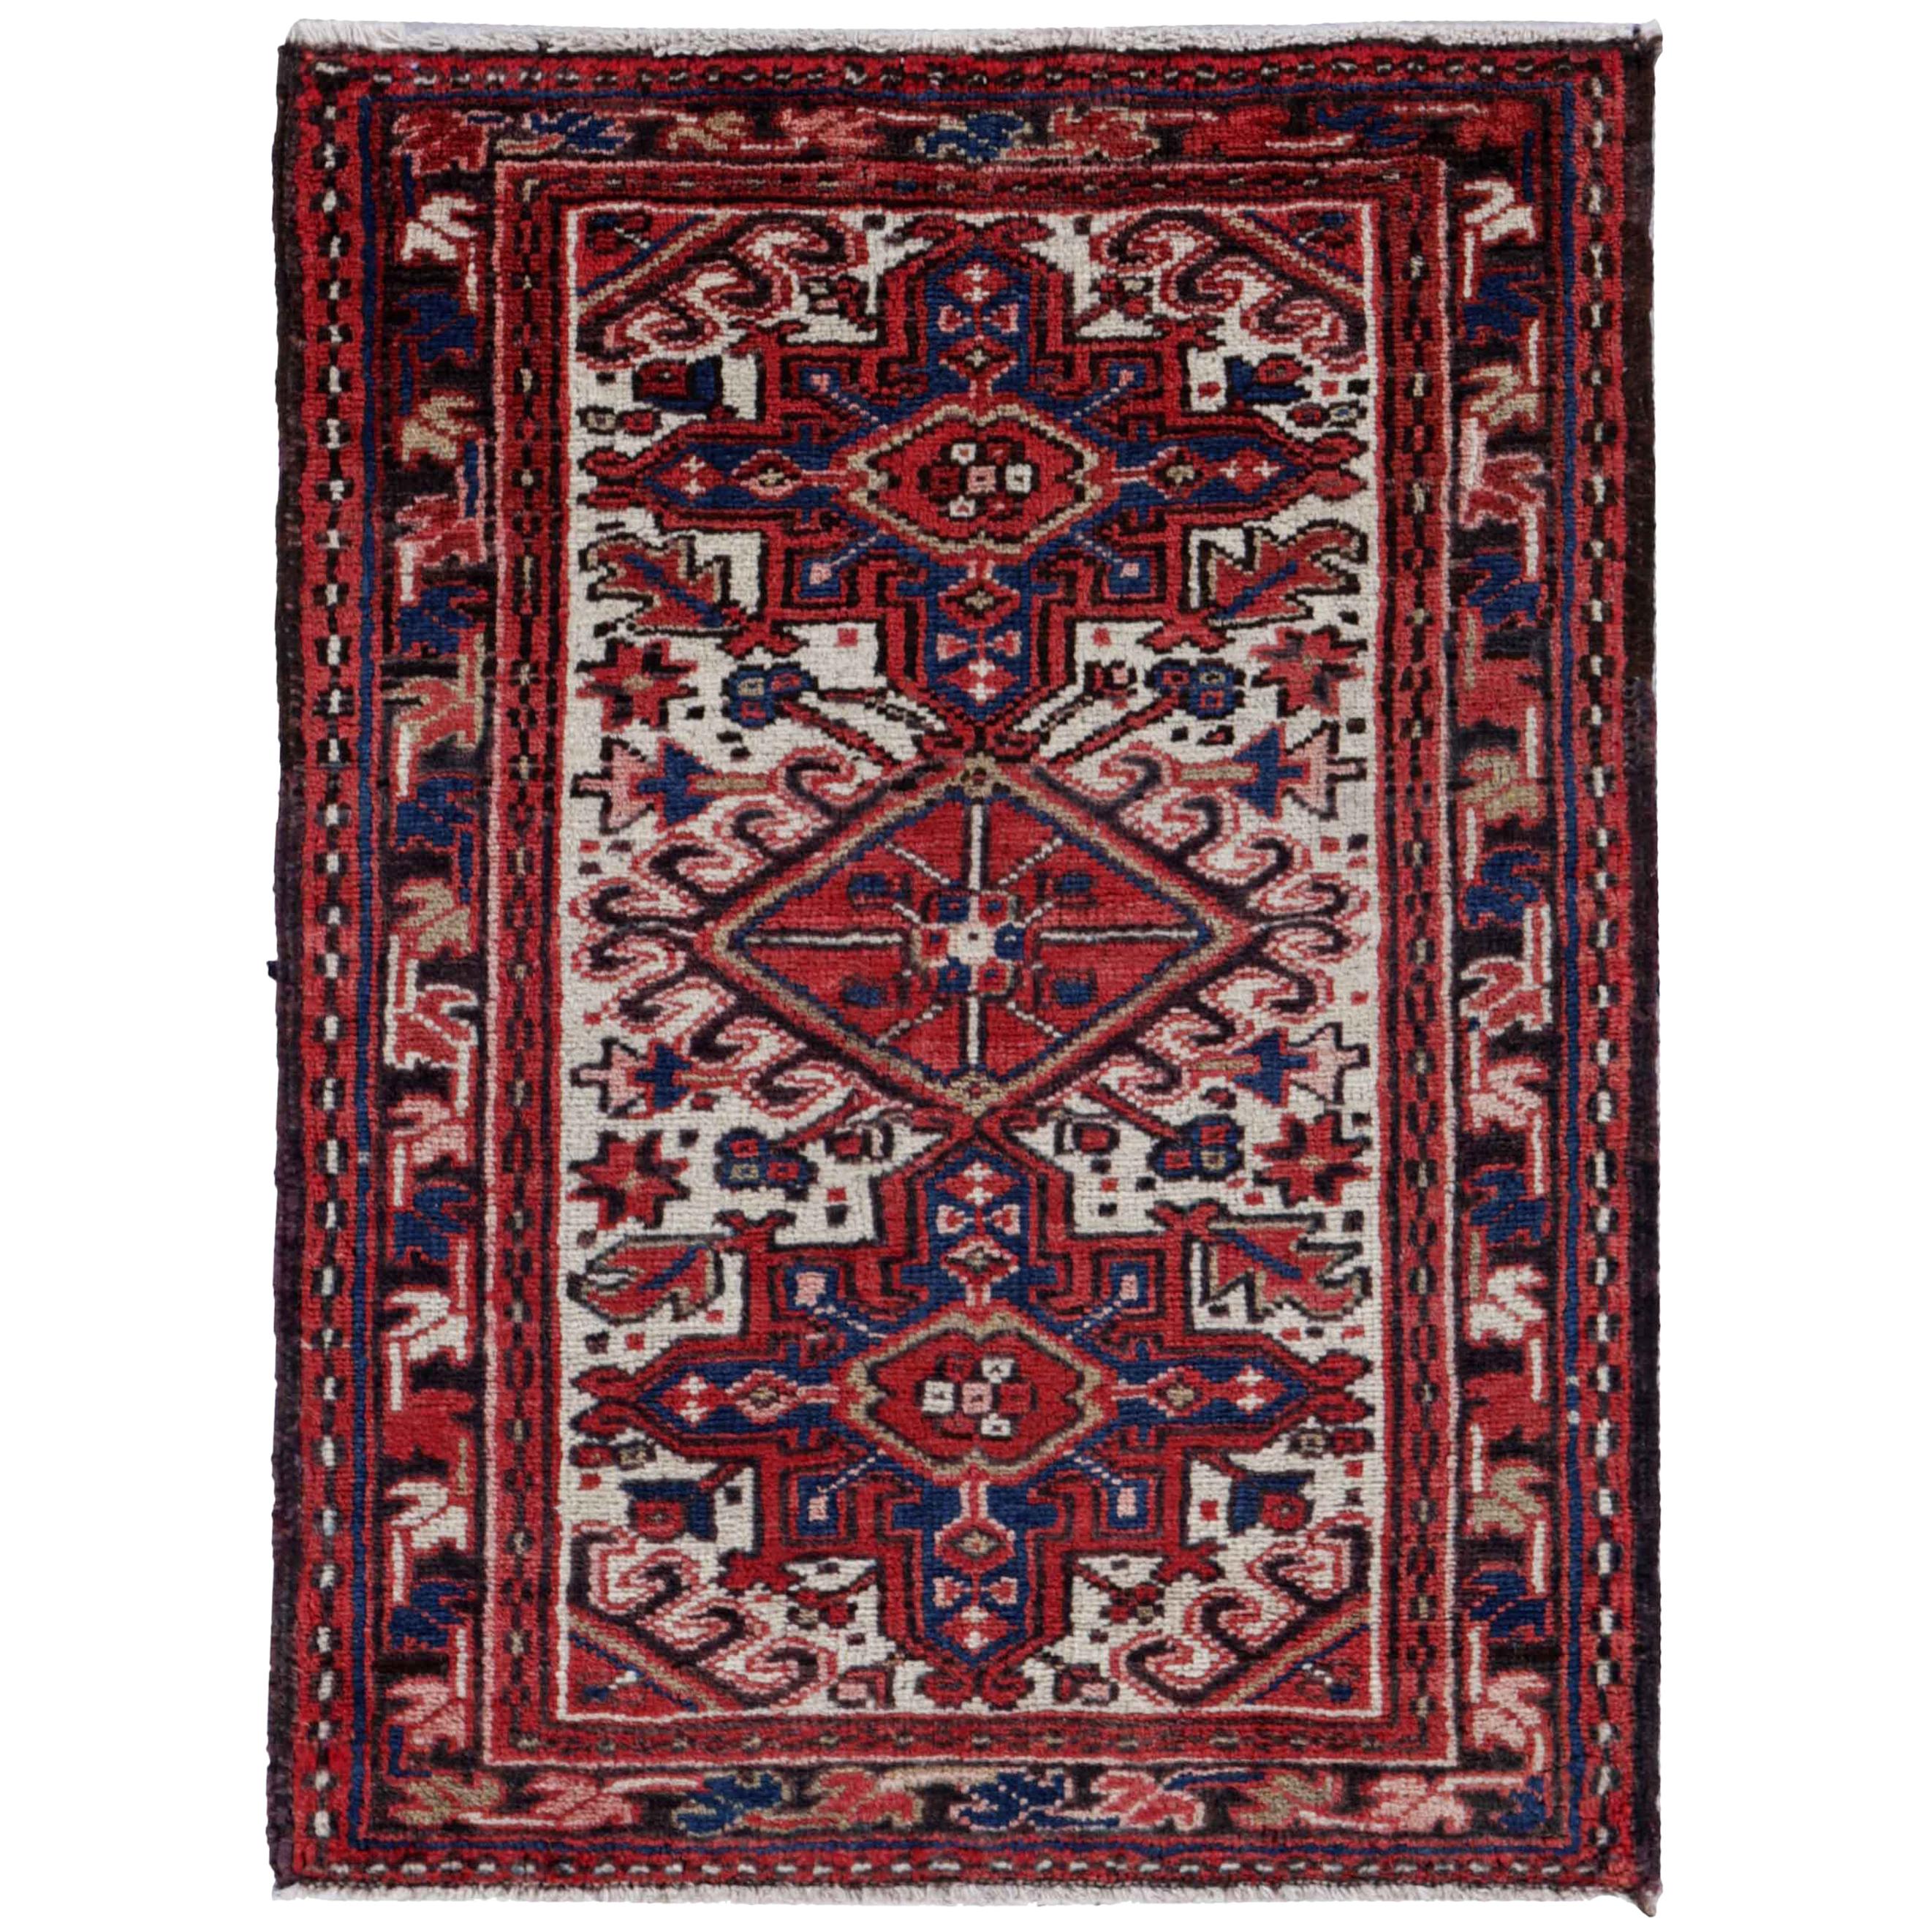 Antique Persian Square Rug Heriz Design For Sale